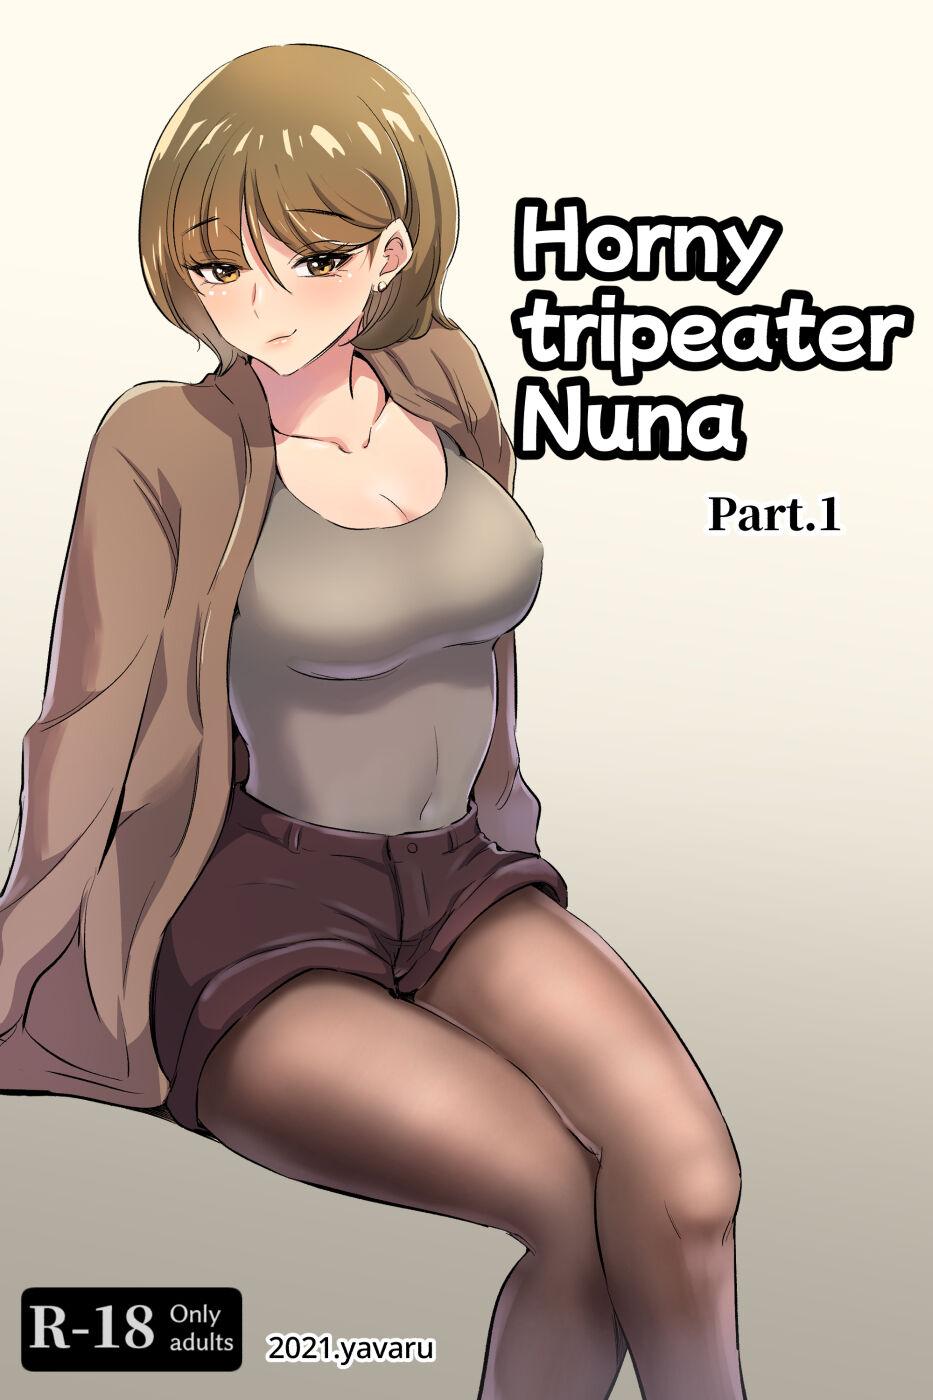 Horny tripeater Nuna 0